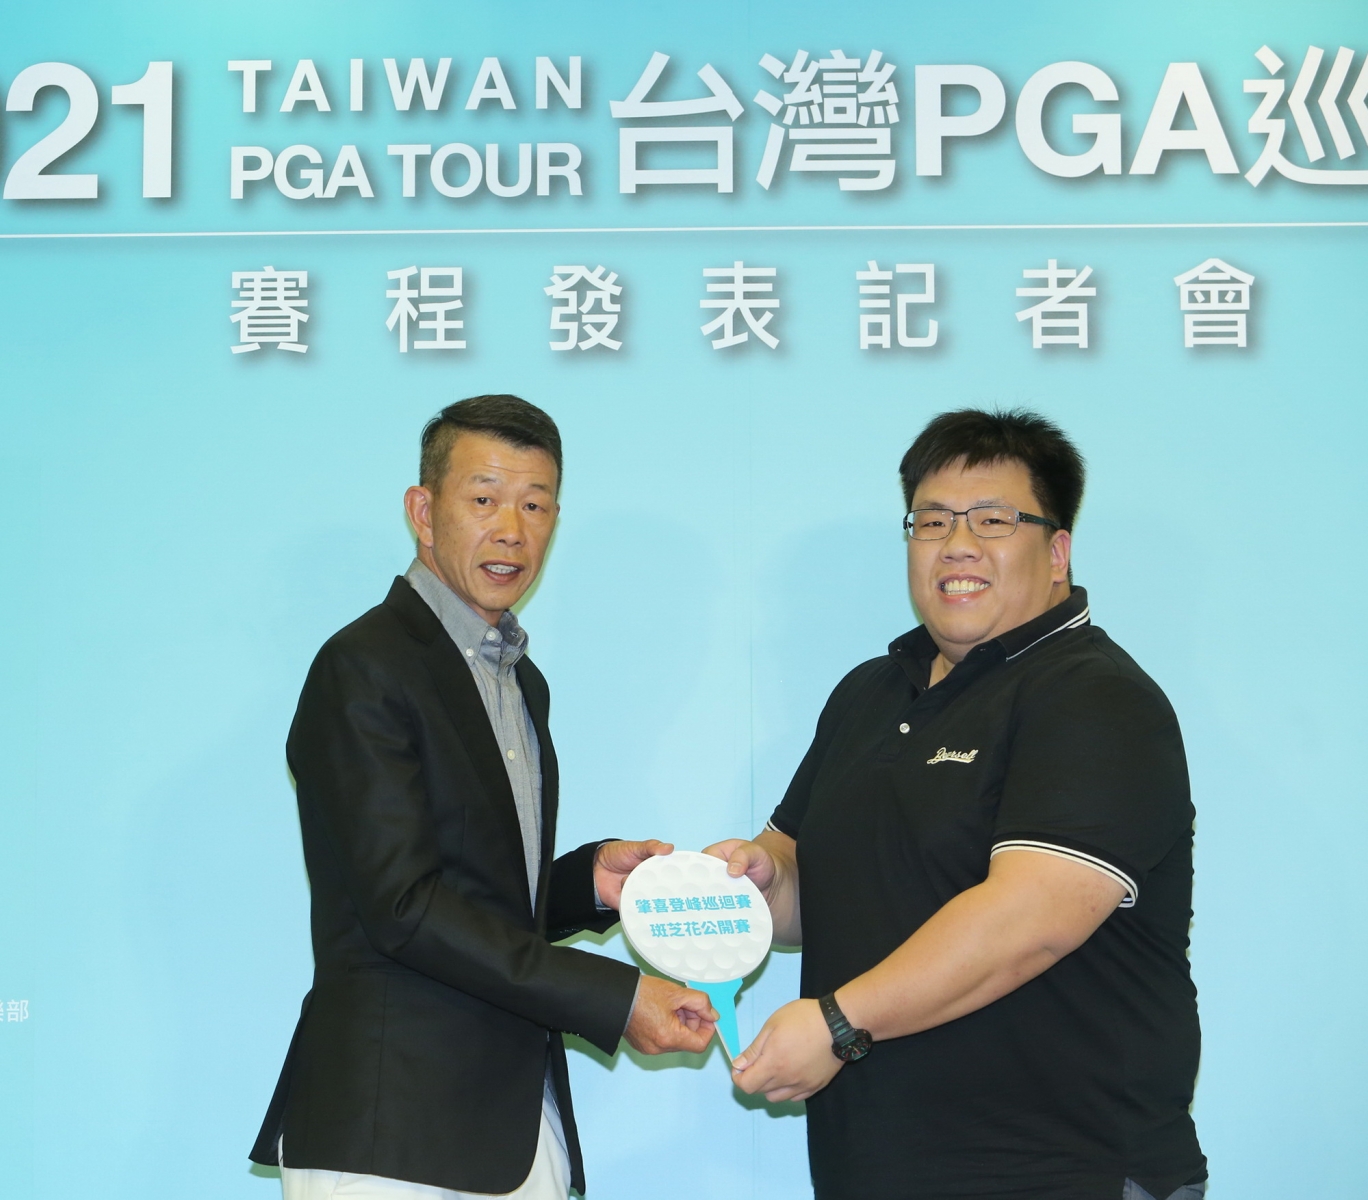 2021台灣PGA巡迴賽事記者發表會，斑芝花球場今年除了仍贊助TB挑戰賽，也同時增加聯合贊助一場台巡賽，右為斑芝花球場總經理鄭博元，左為TPGA理事長陳榮興。(鍾豐榮攝影)